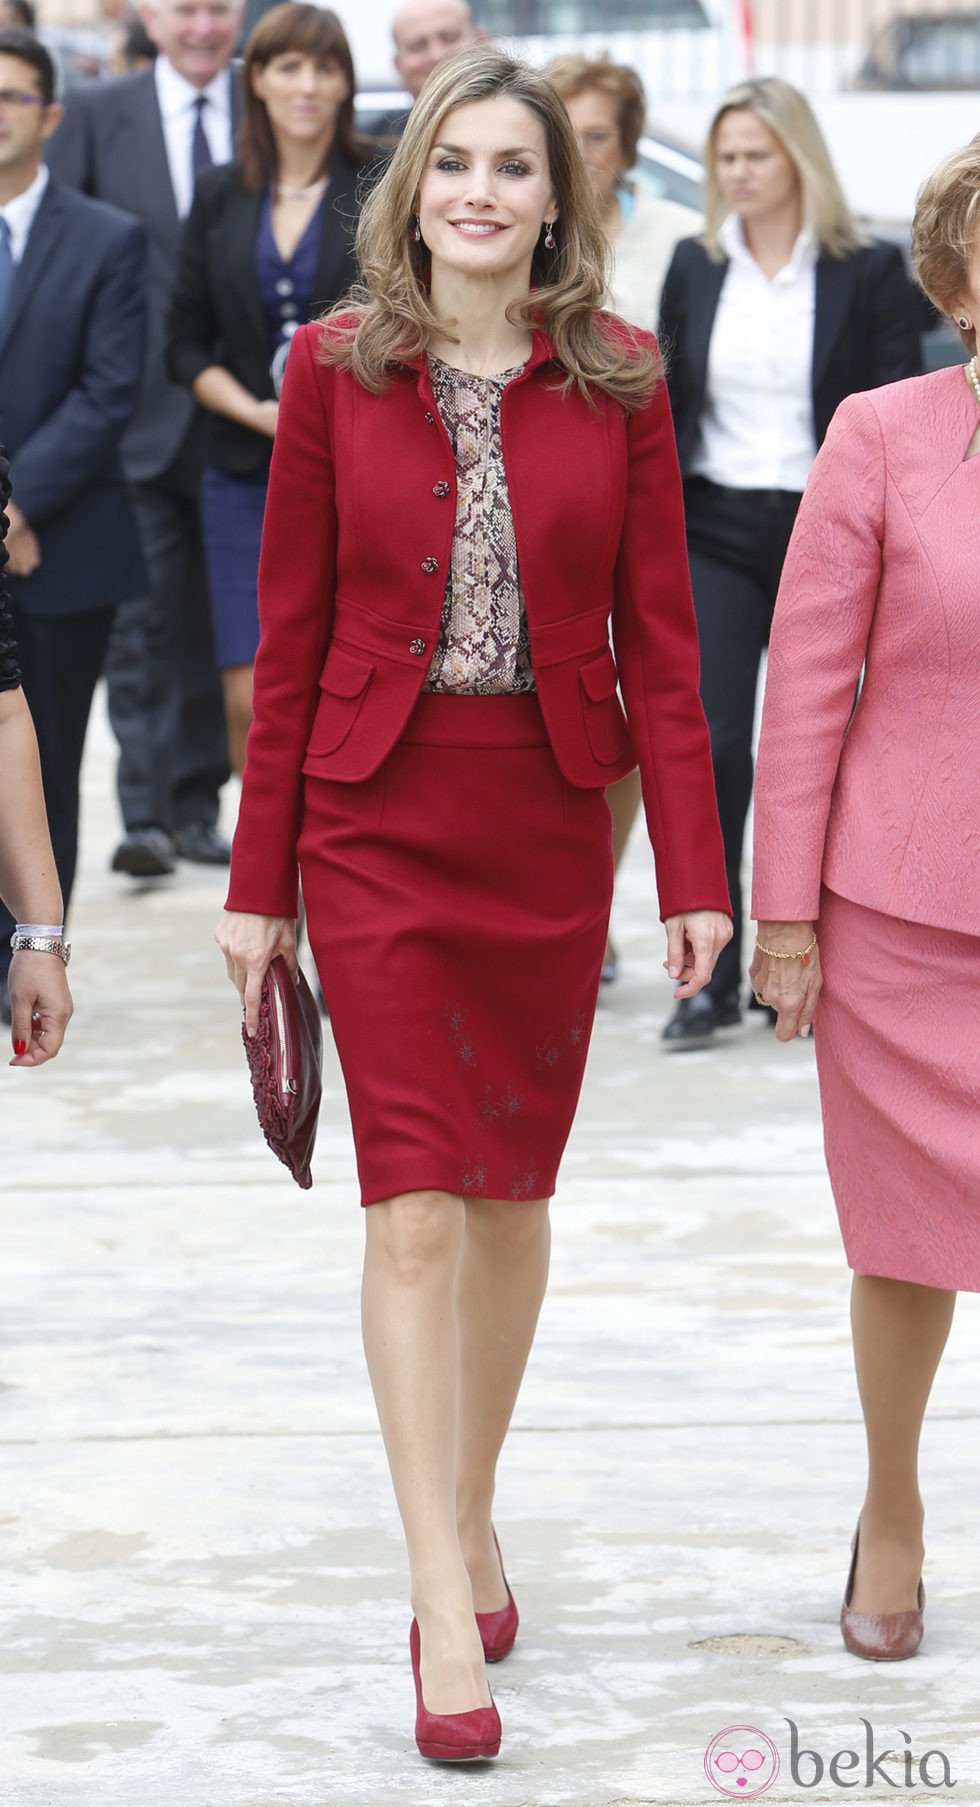 La Reina Letizia en su primer viaje oficial a Portugal en solitario como Reina de España